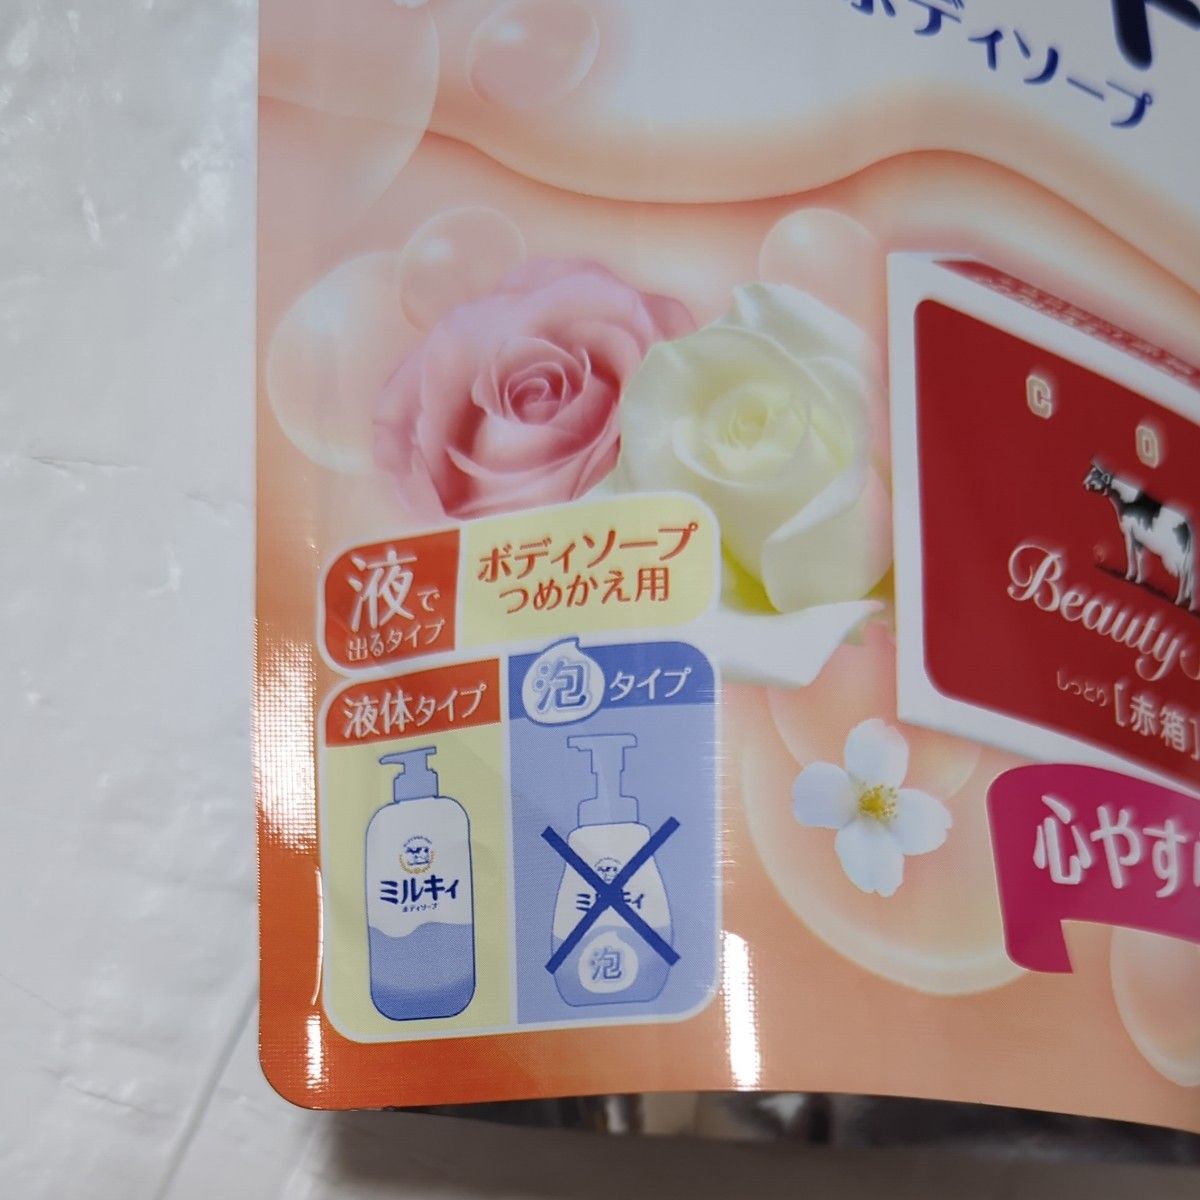 【新品】限定品  牛乳石鹸  ミルキィ ボディソープ   赤箱の香り  2袋  カウブランド  心やすらぐ花の香り  シアバター